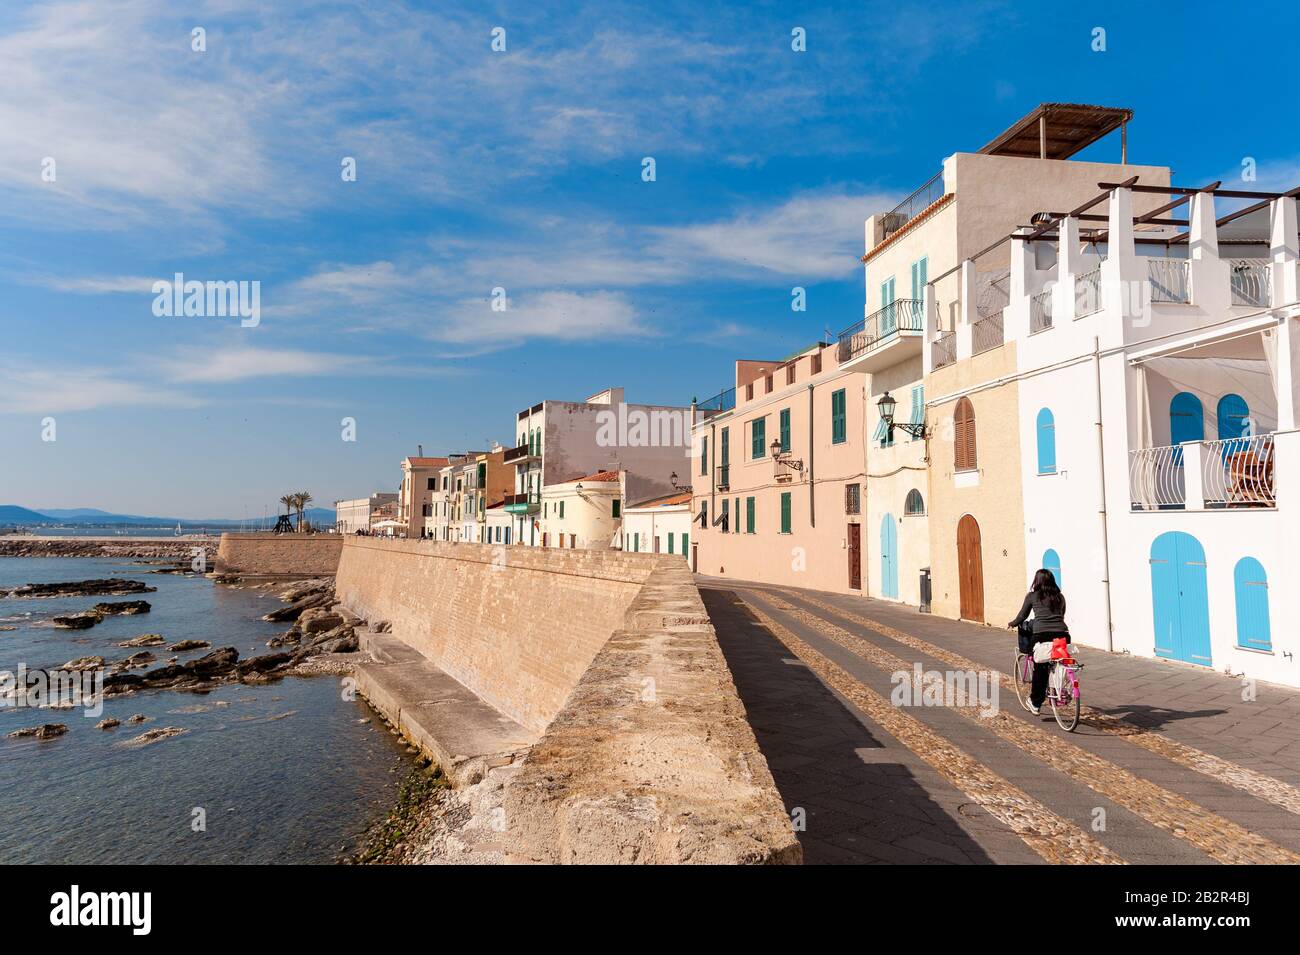 Promenade au bord de l'eau, Alghero, Sardaigne, Italie Banque D'Images